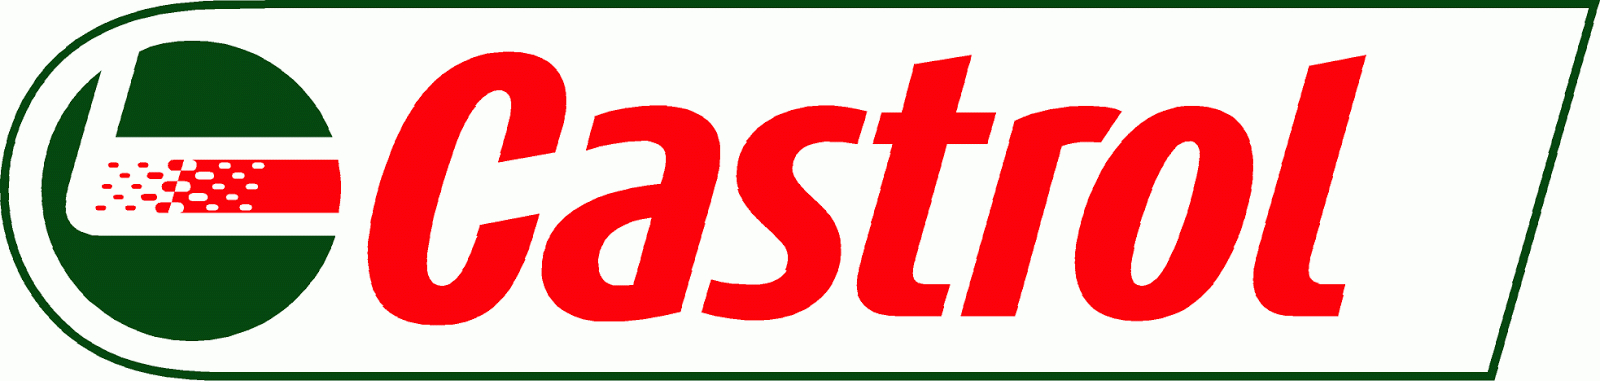 Logo de l'entreprise Castrol